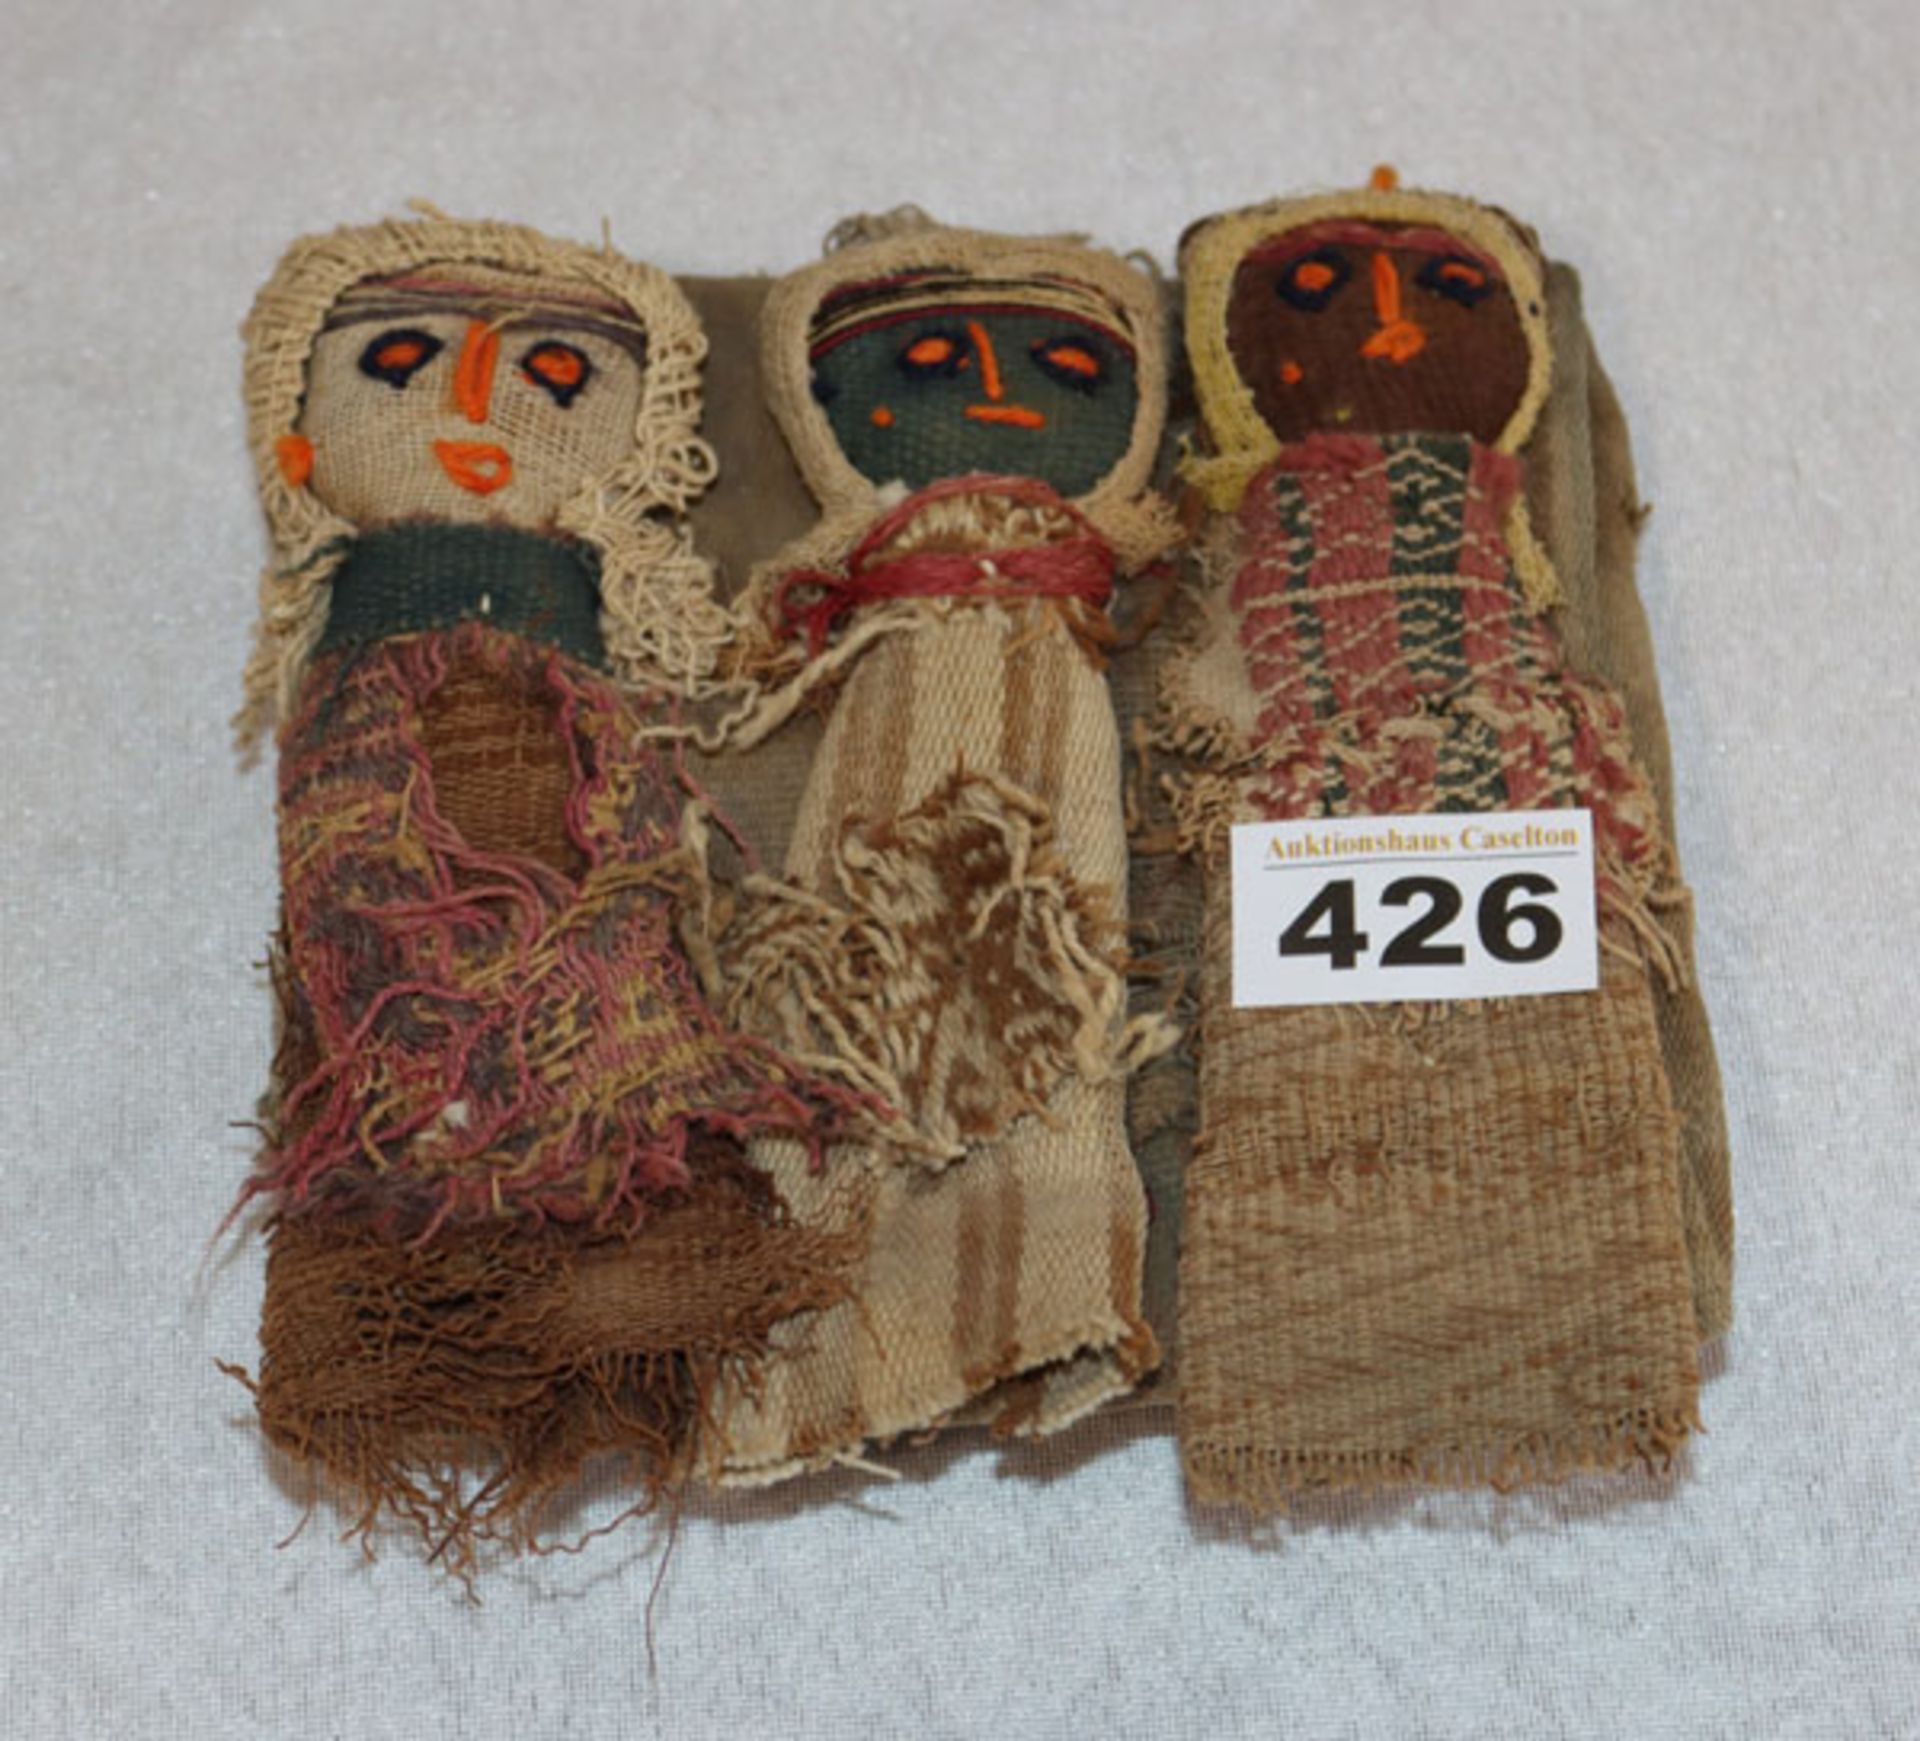 Grabbeigaben-Puppen der Chancay, Peru, Alter unbekannt, 3 Puppen aus verschiedenen alten Textilien